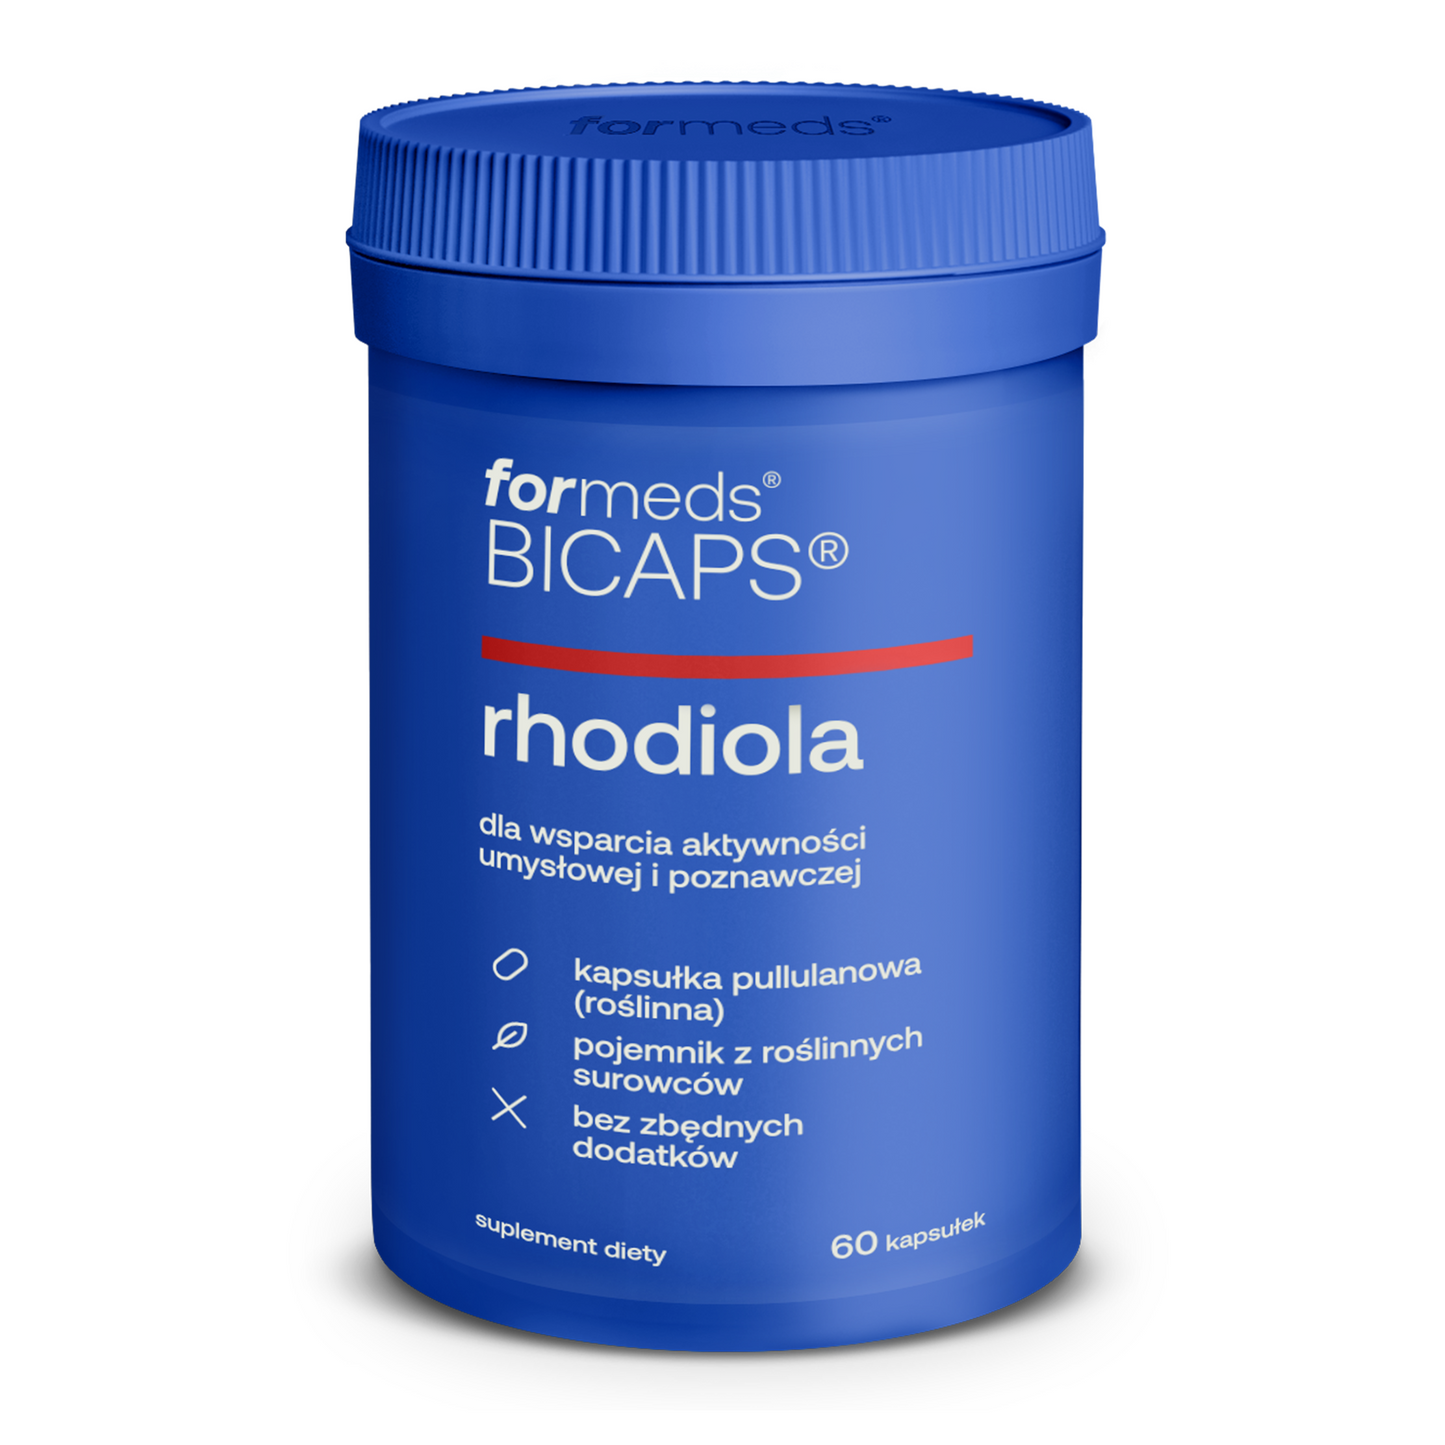 BICAPS Rhodiola - różeniec górski (Rhodiola Rosea), tabletki, kapsułki